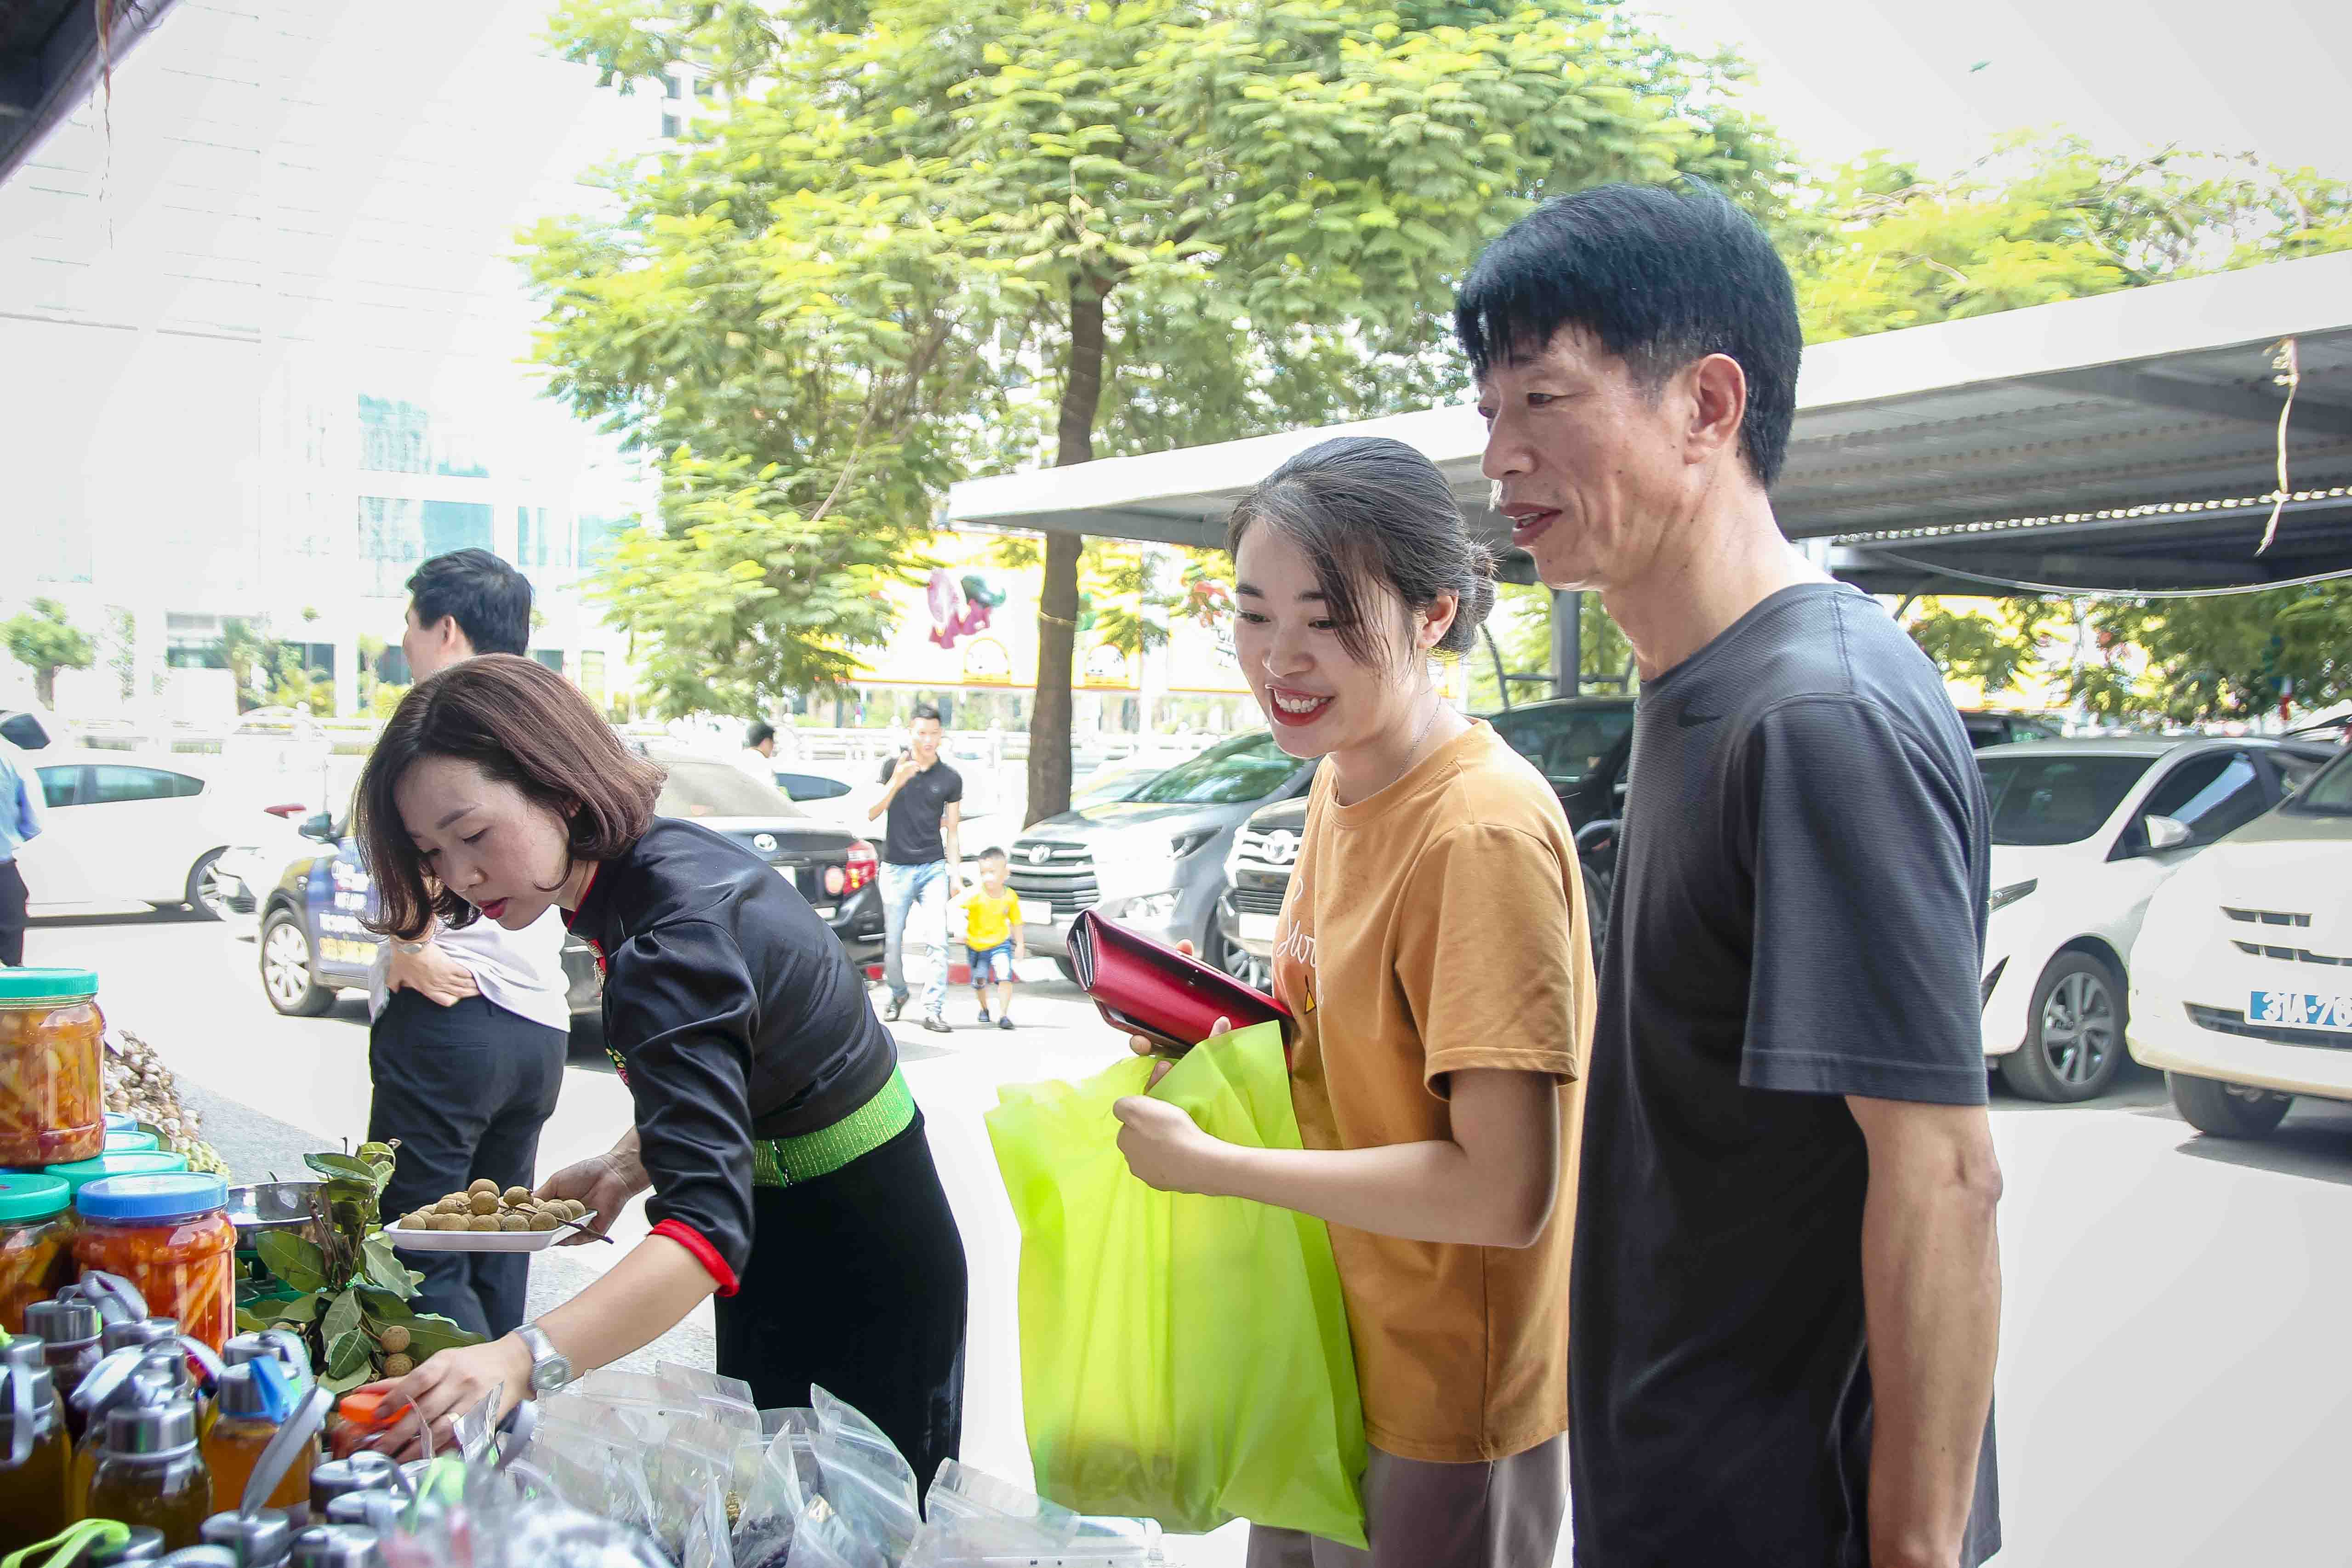 Tuần lễ Nhãn và Nông sản an toàn tỉnh Sơn La năm 2019